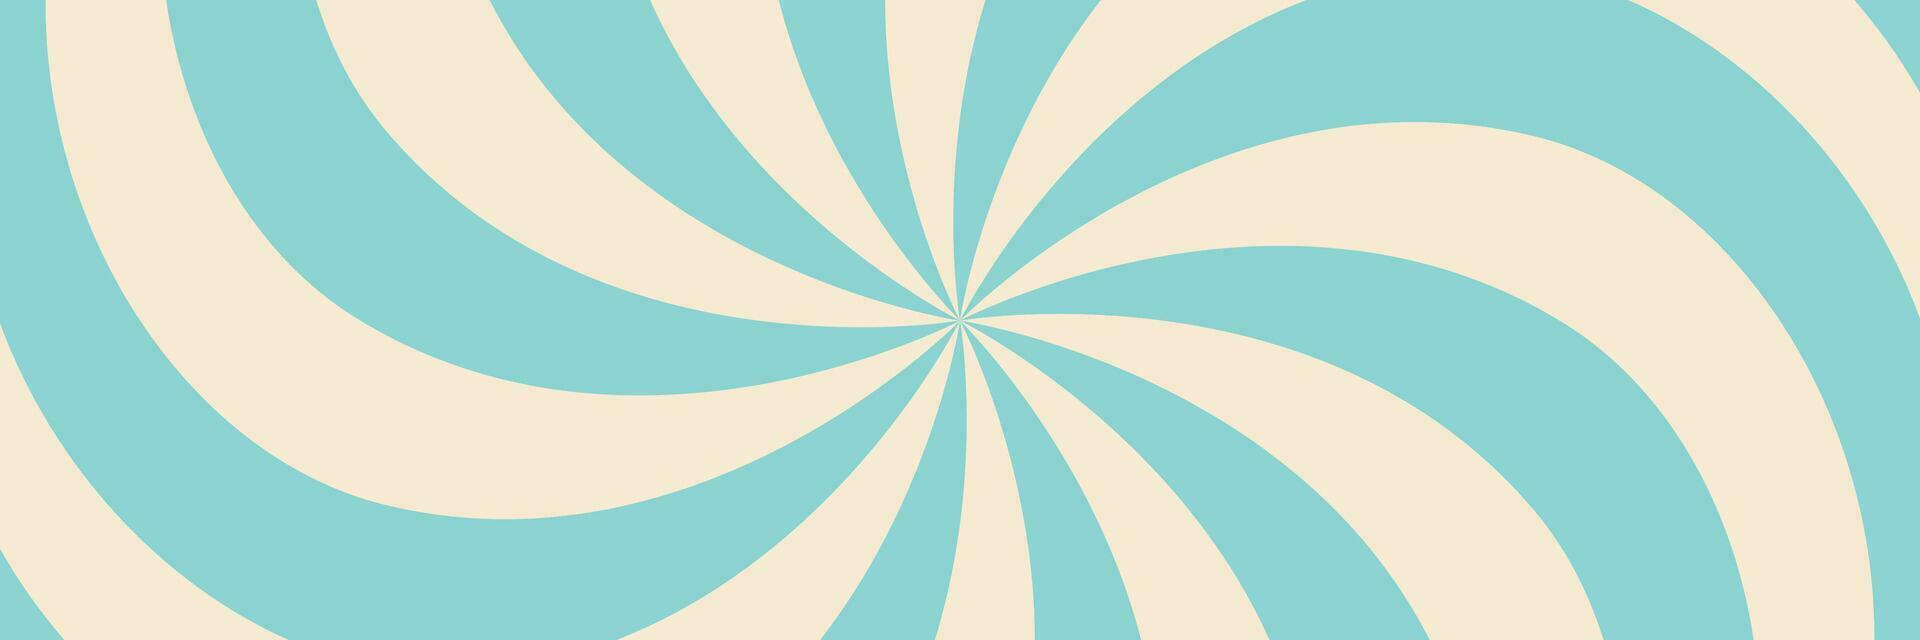 vorticoso radiale ghiaccio crema sfondo. vettore illustrazione per turbine design. estate. vortice spirale volteggiare. blu. elica rotazione raggi. convergente psychadelic scalabile strisce. divertimento sole leggero travi.